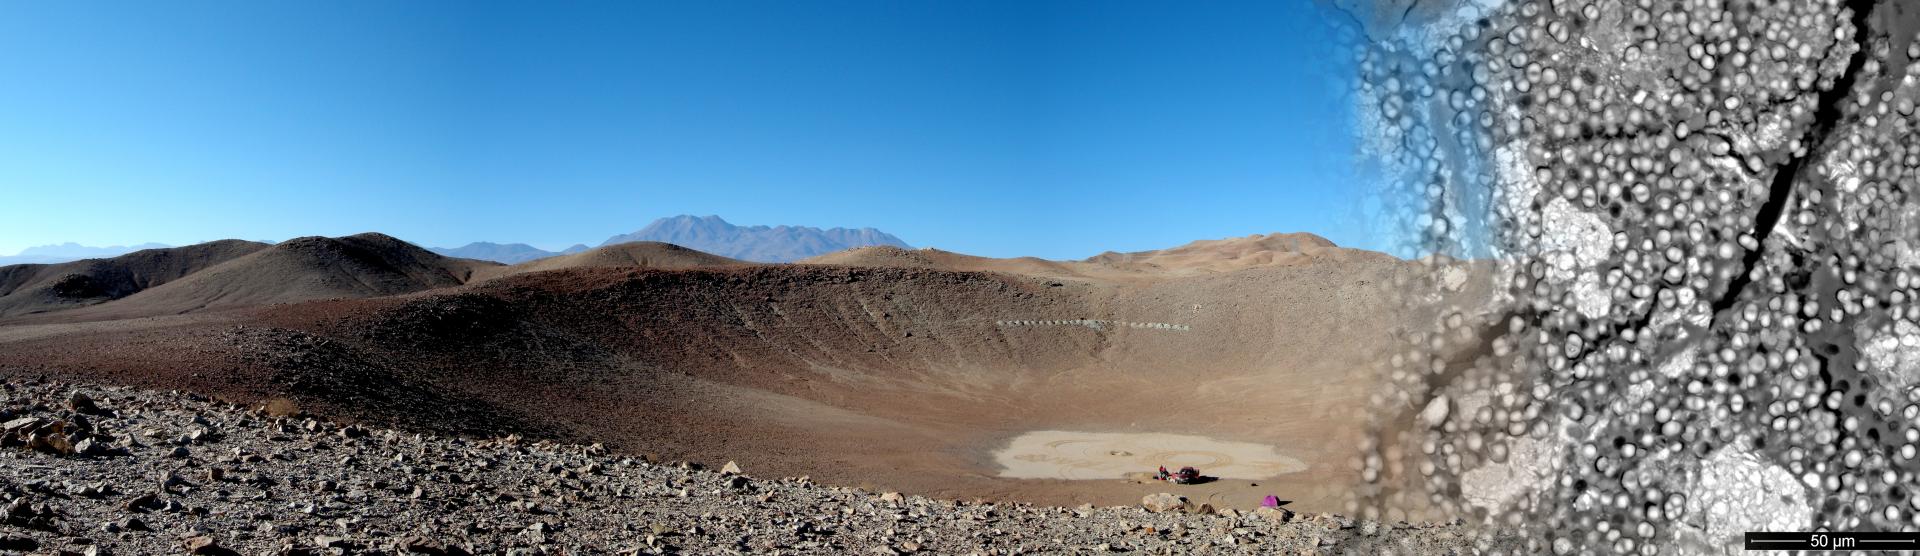 Desierto de Atacama, cráter Monturaqui y cianobacterias endoliticas dentro de yeso (SEM-BSE)